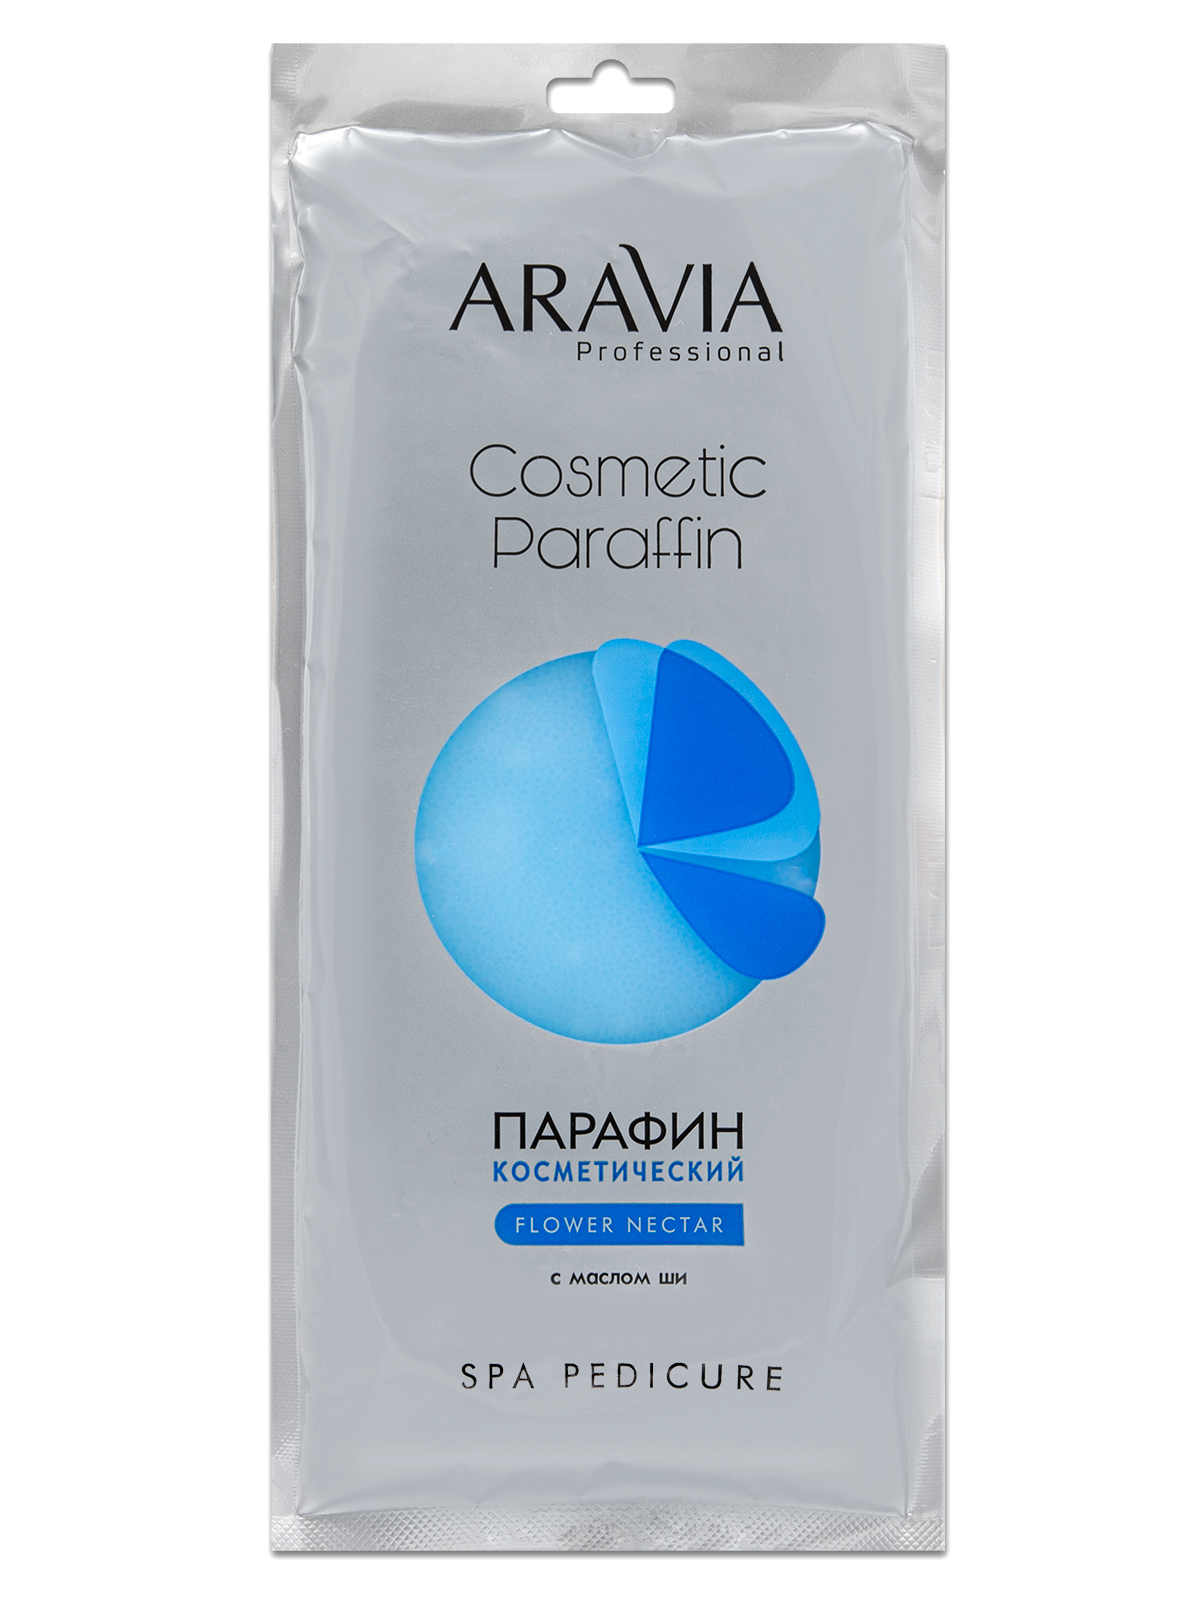 Парафин косметический Цветочный нектар с маслом ши, 500 г. ARAVIA Professional